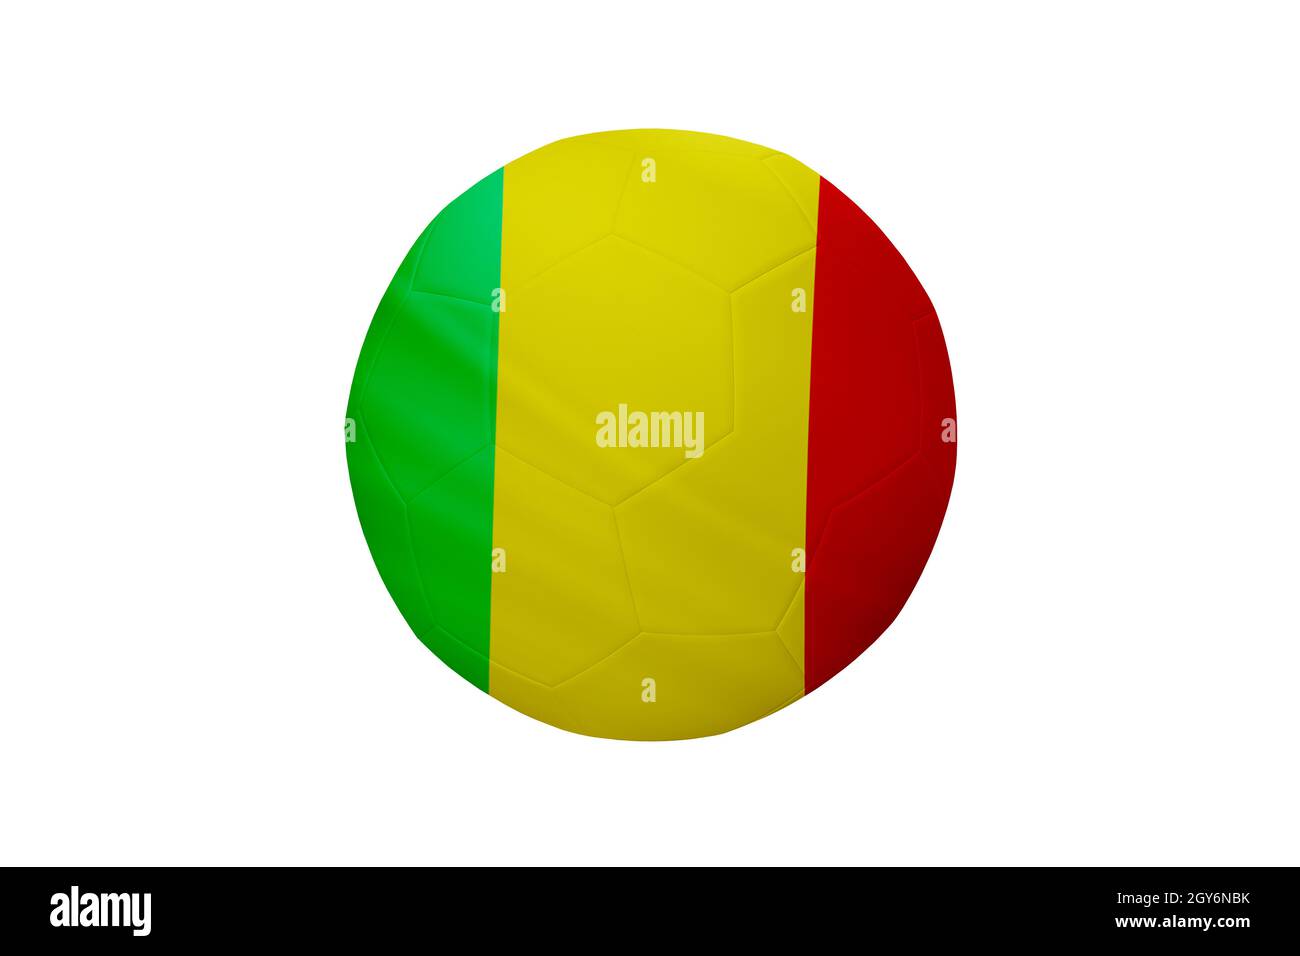 Fußball in den Farben der Mali-Flagge isoliert auf weißem Hintergrund. In einem konzeptionellen Meisterschaftsbild, das Mali unterstützt. Stockfoto